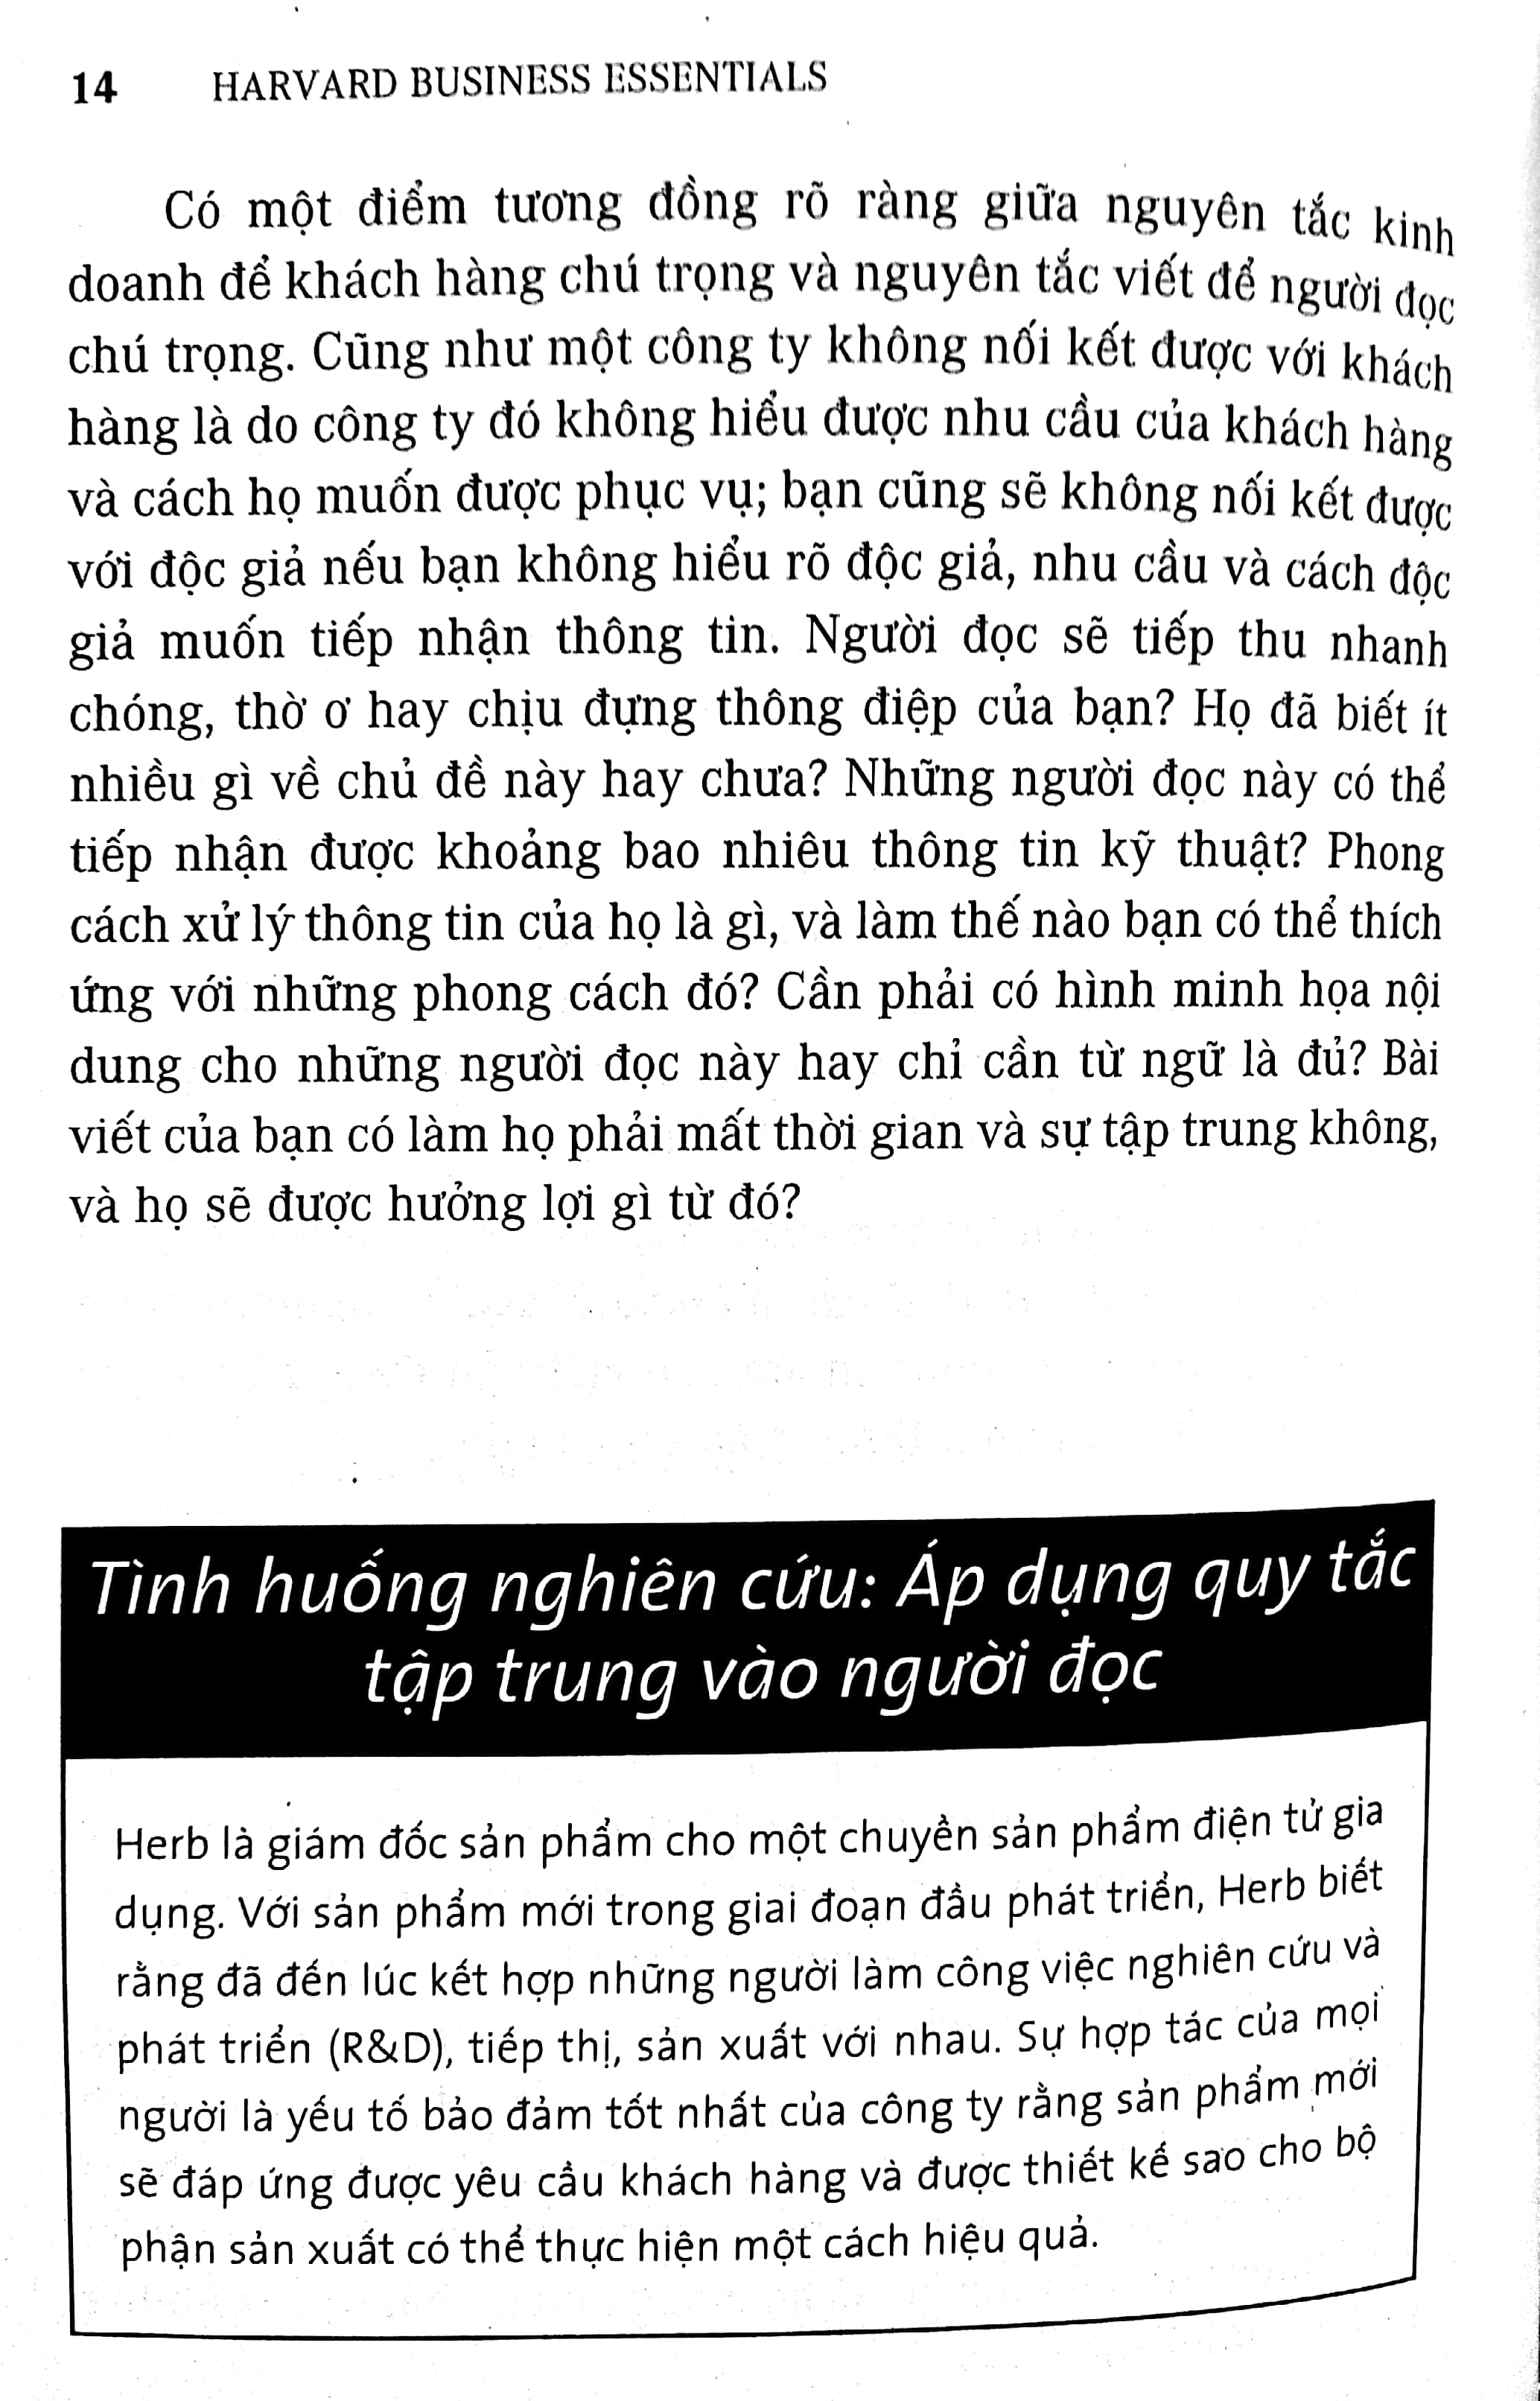 Cẩm Nang Kinh Doanh - Giao Tiếp Thương Mại 2018 PDF